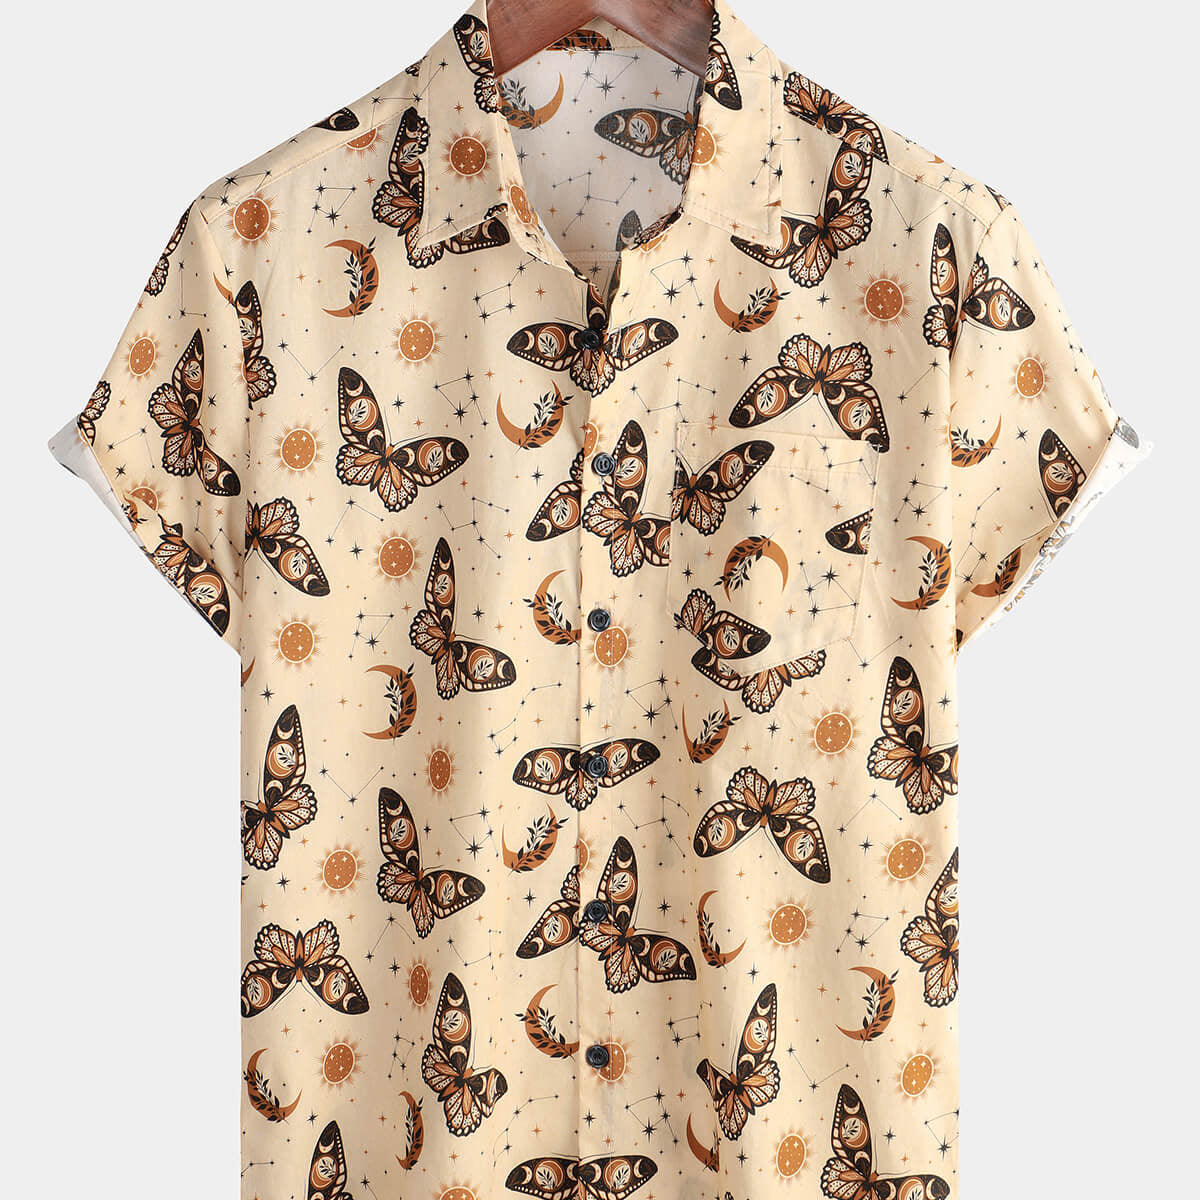 Men's Casual Butterfly Print Summer Short Sleeve Button Up Shirt